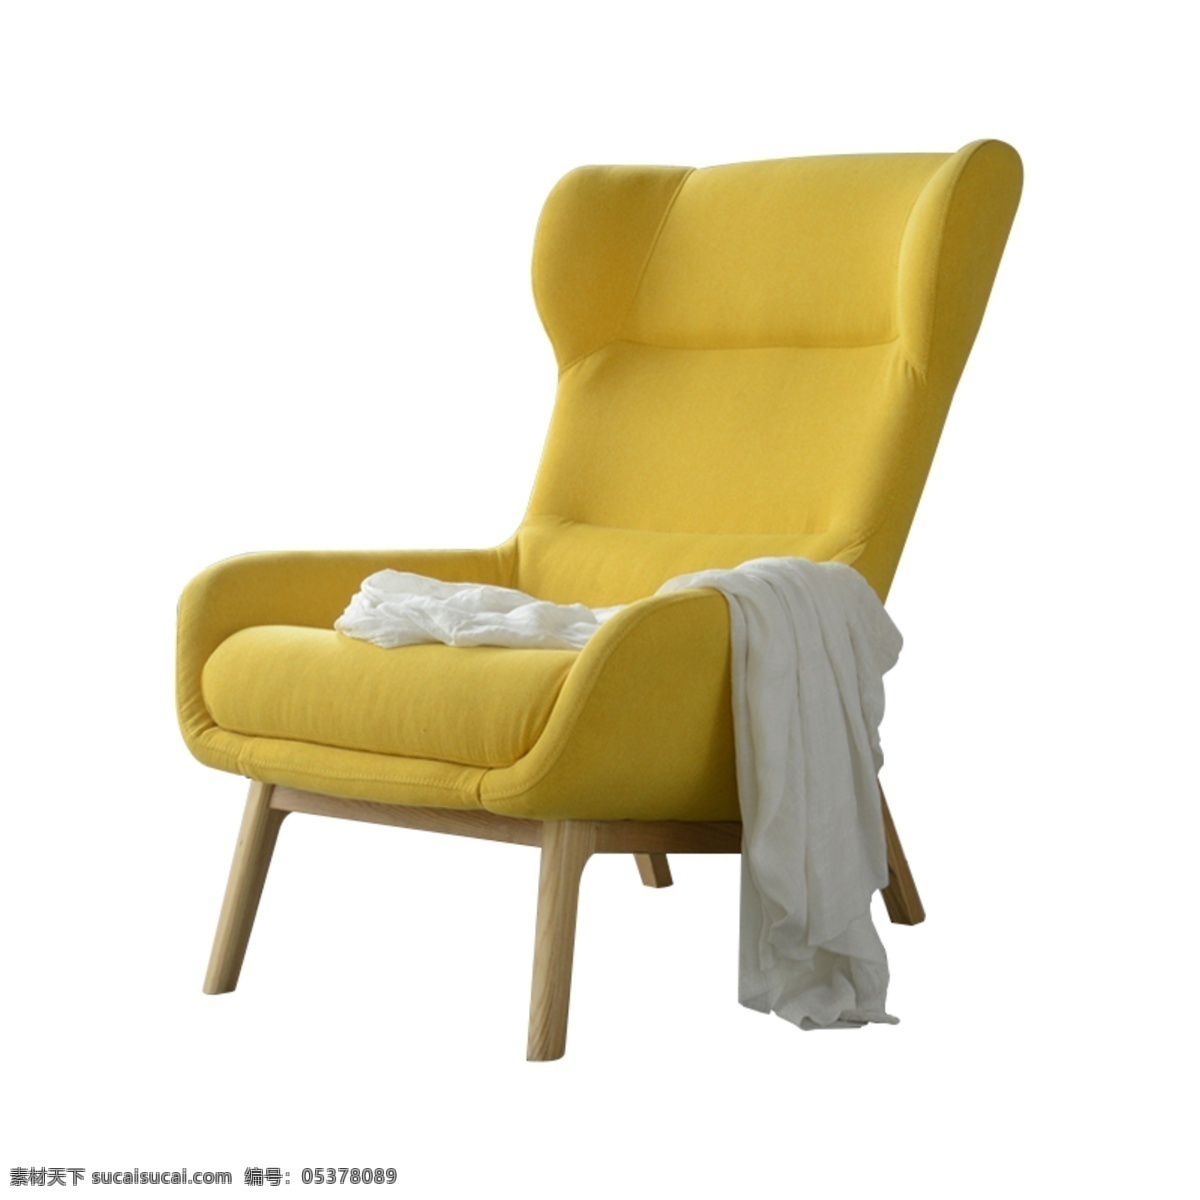 黄色 舒适 柔软 沙发椅子 沙发 椅子 艳丽